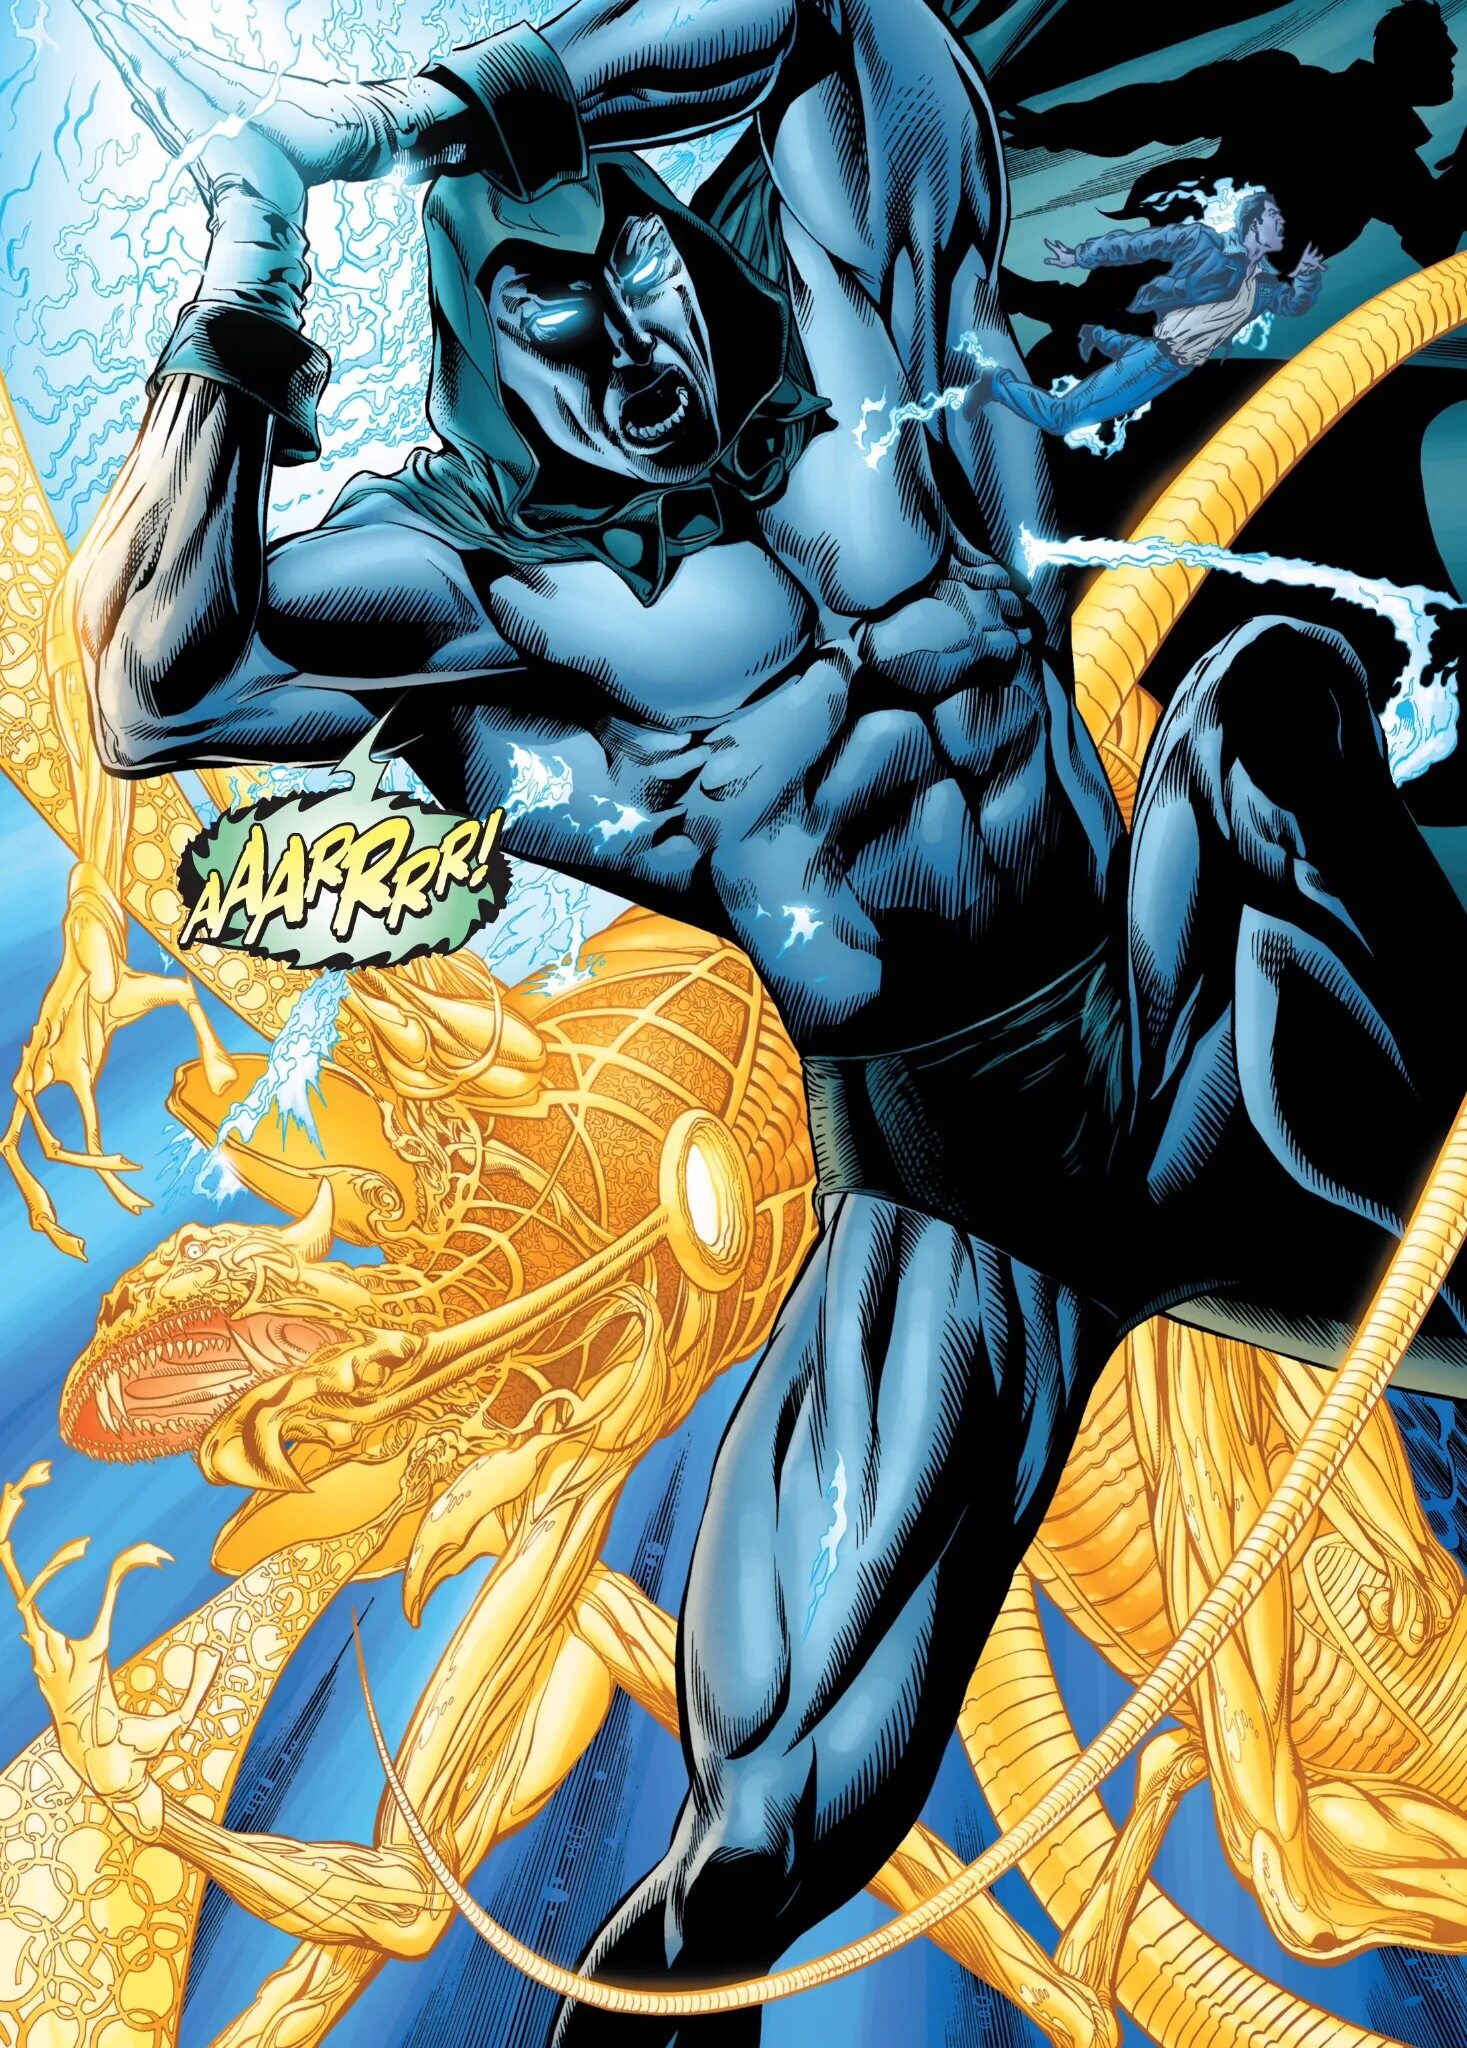 Страница комикса. Green Lantern: Rebirth #4. Страница из комикса. Комиксы DC страницы.